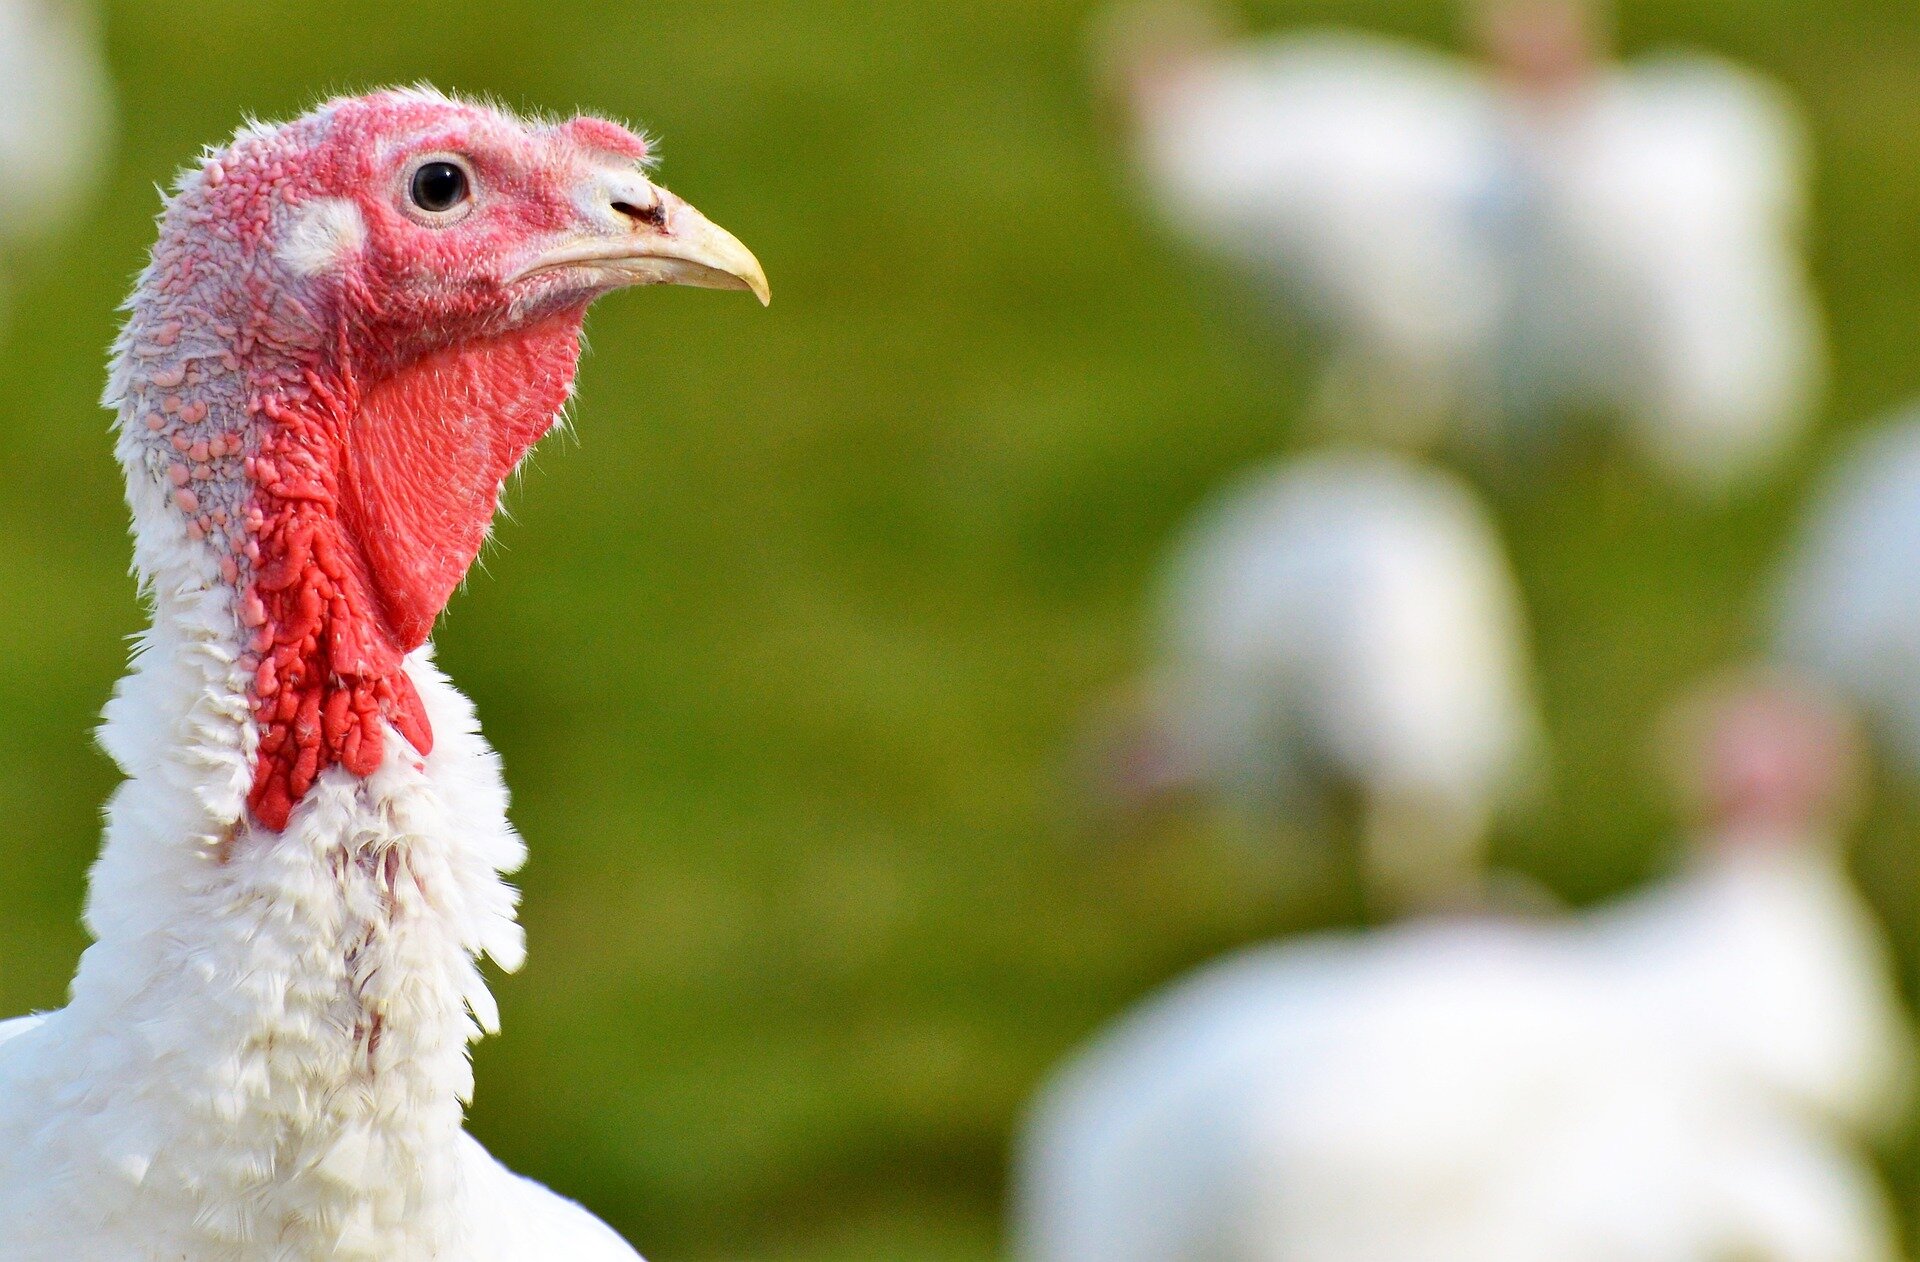 Iowa yumurta ve hindi çiftlikleri 5 milyon kuşu kuş gribine kaptırdı